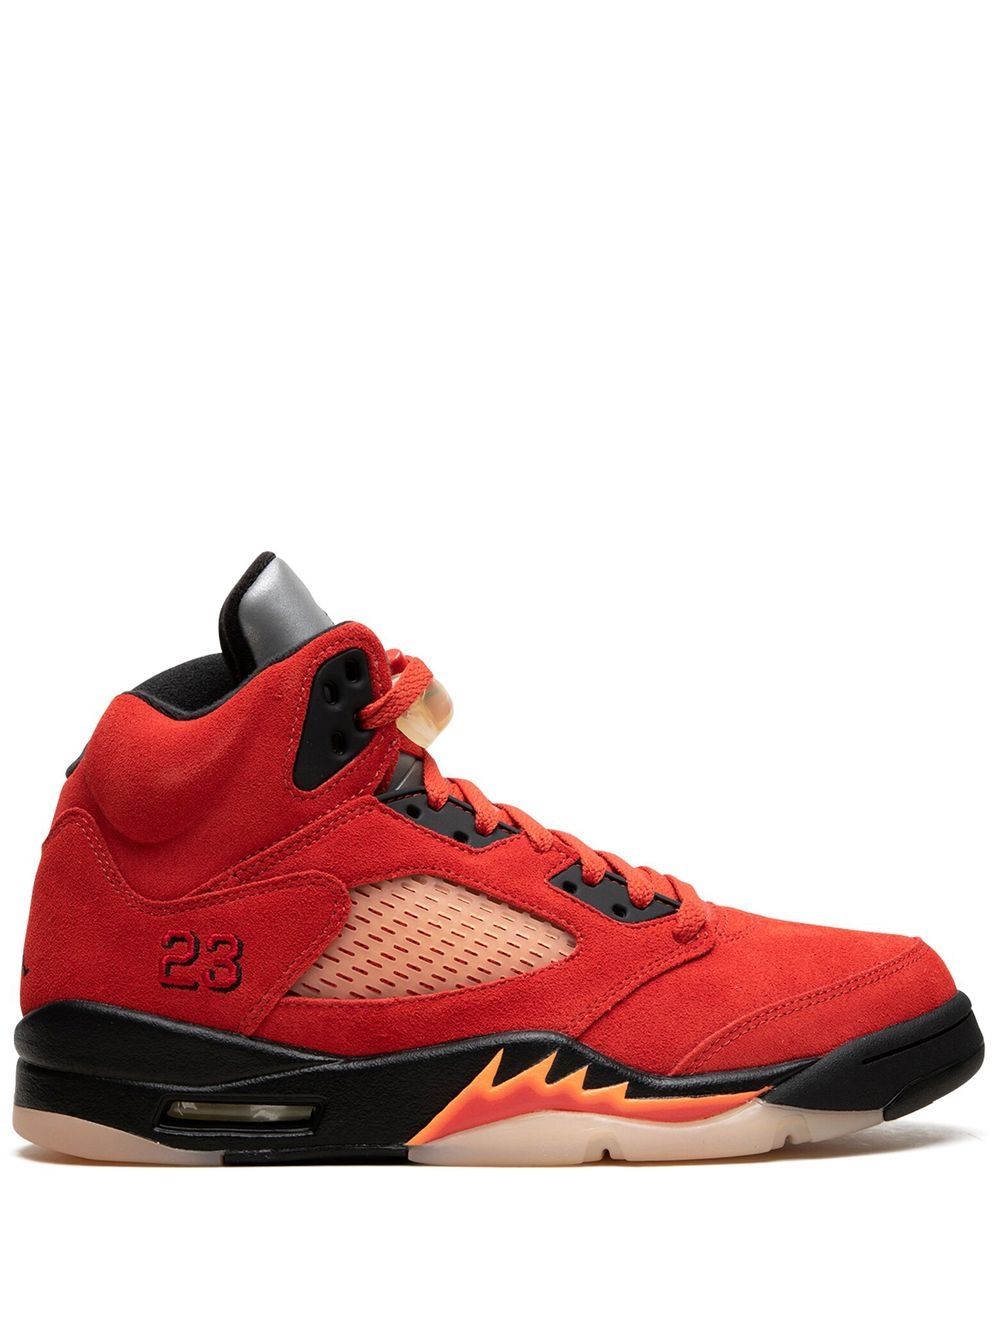 Jordan Air Jordan 5 "Mars For Her" sneakers - Red